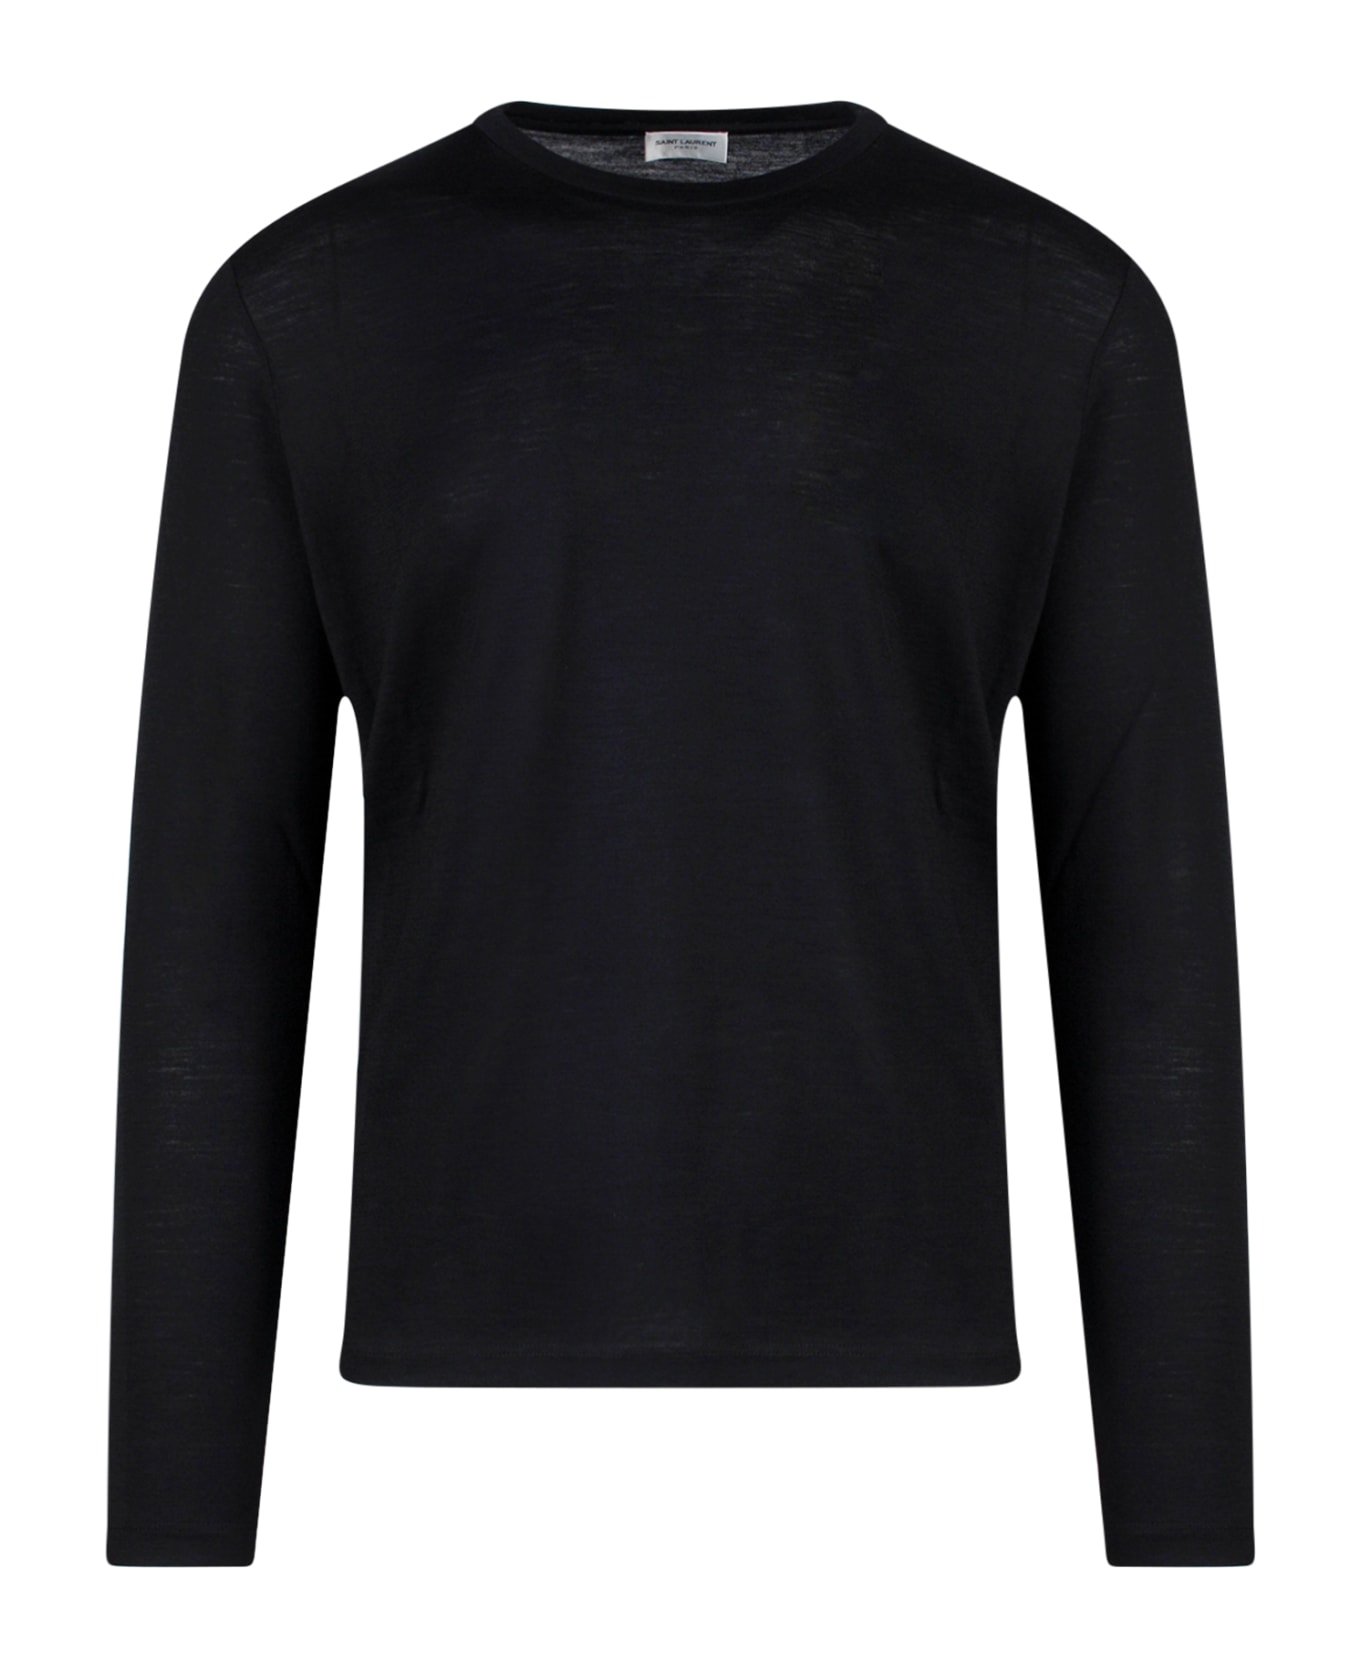 Saint Laurent T-shirt - Black